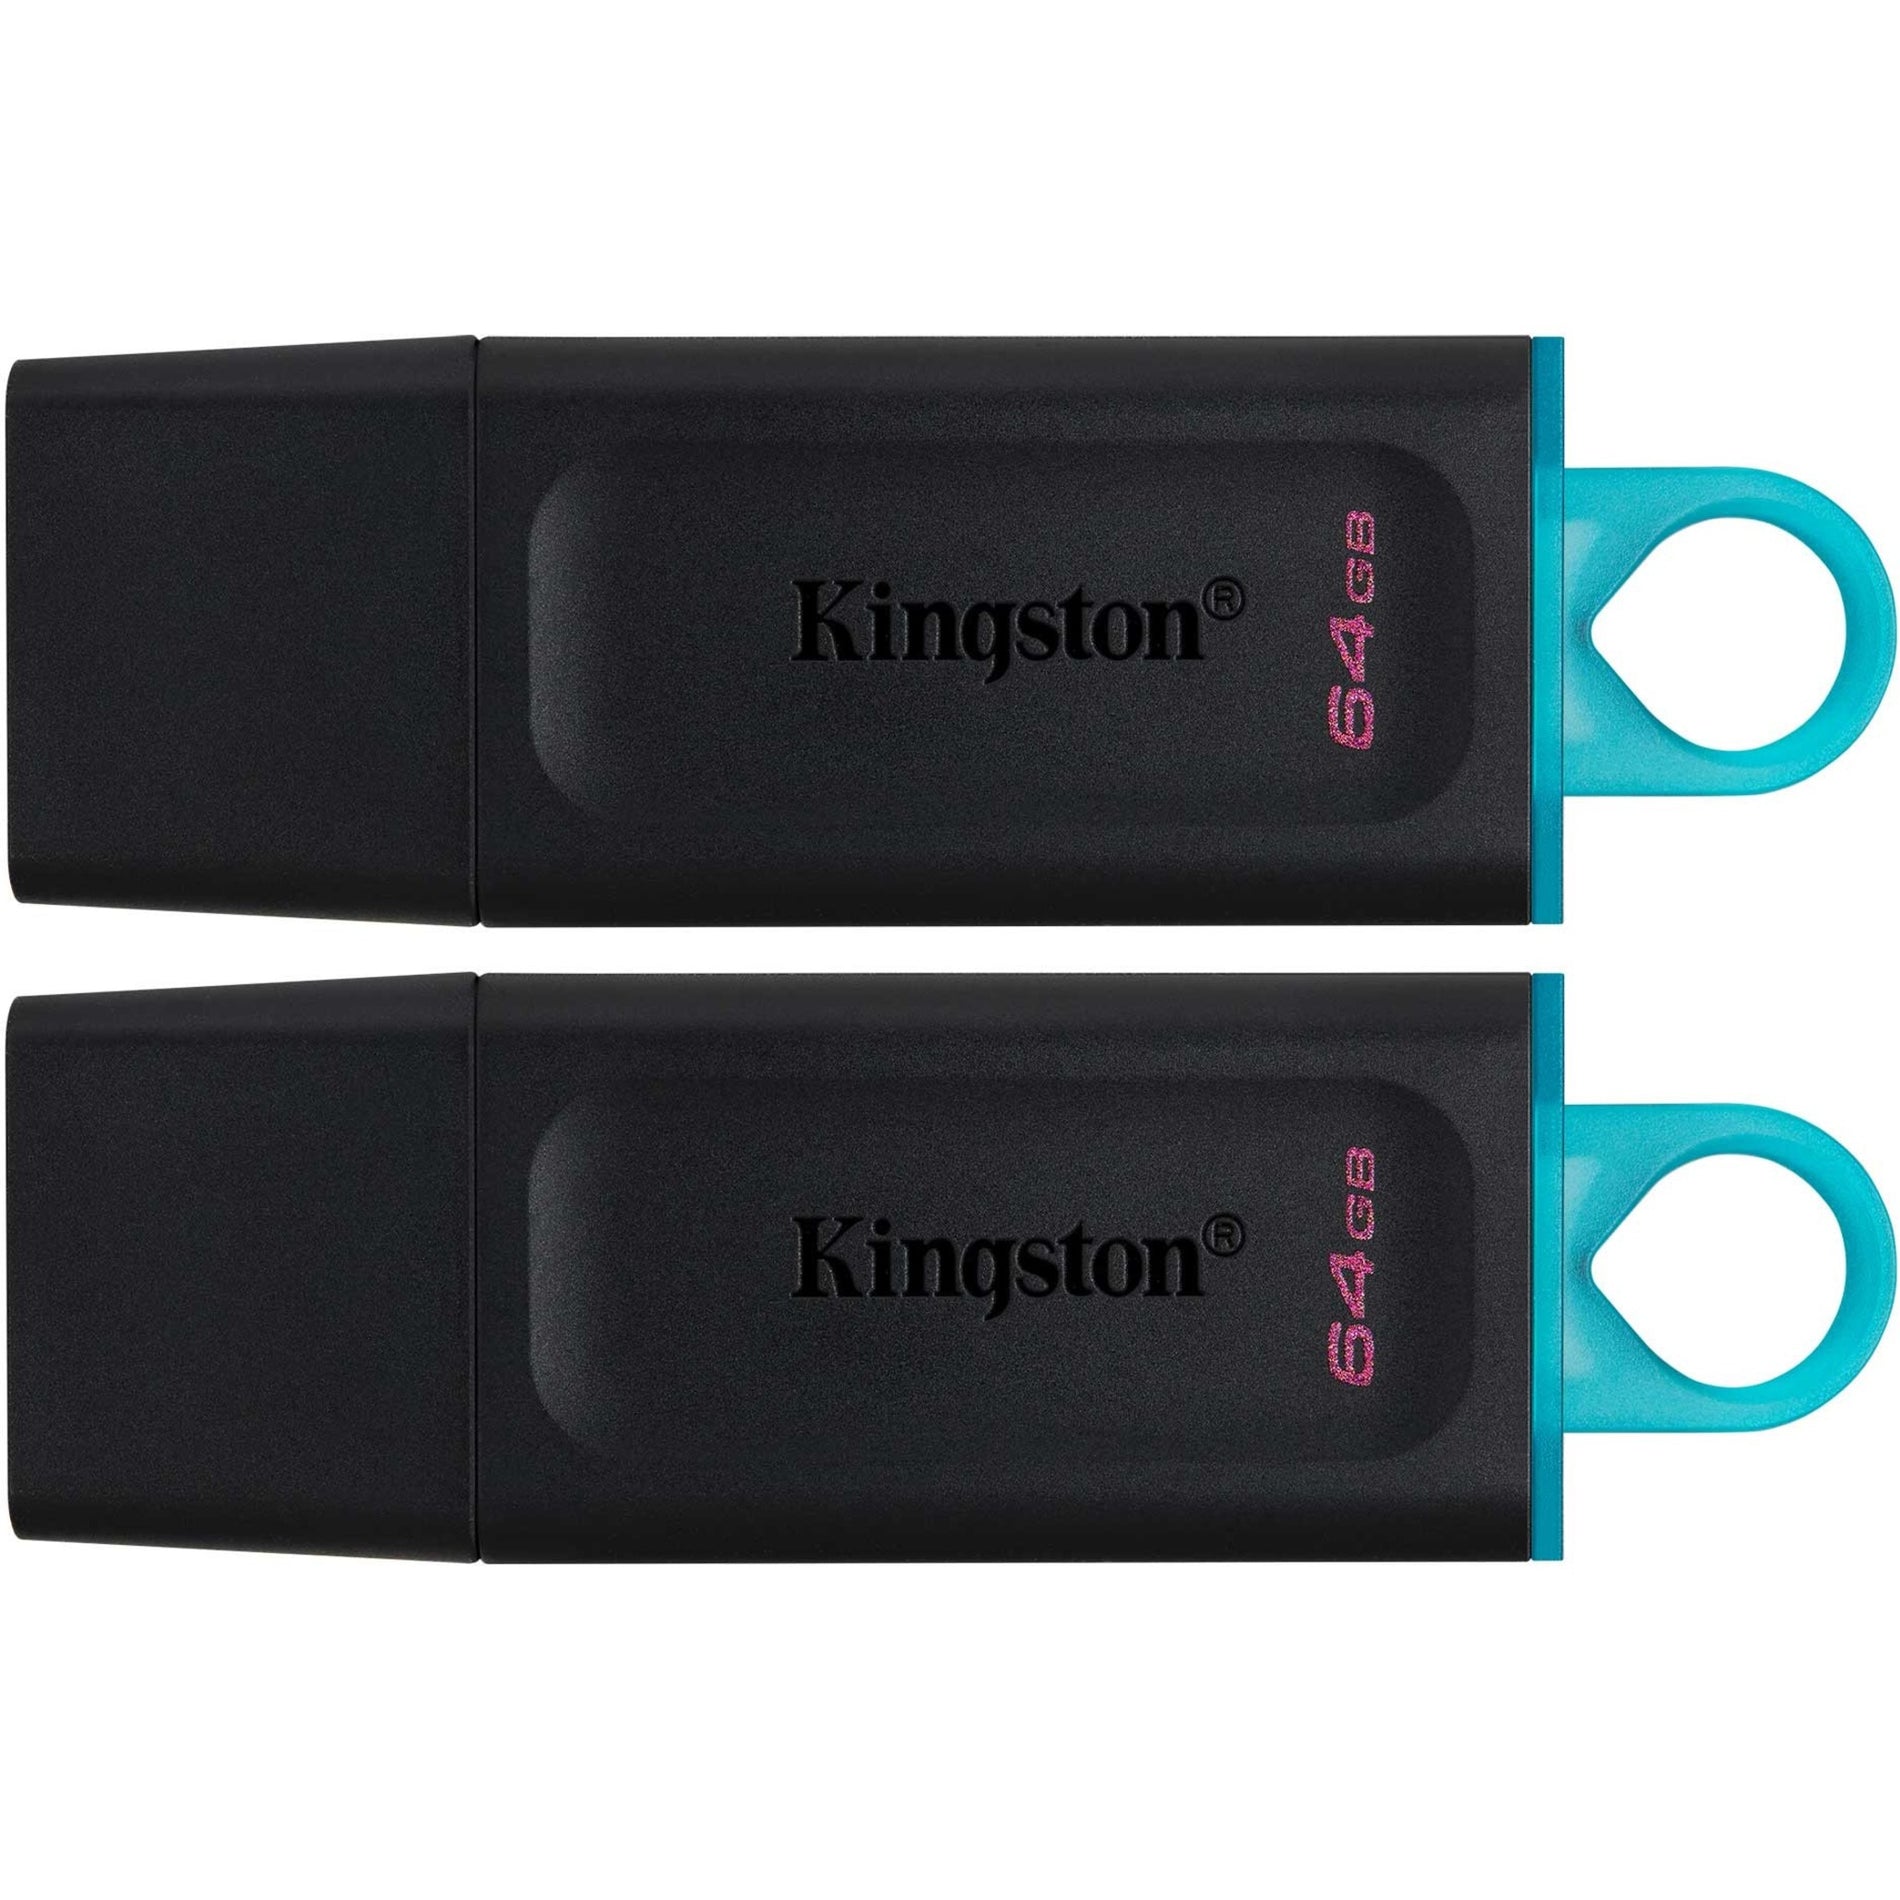 金士顿 Kingston DTX/64GB-2P DataTraveler Exodia 64GB USB 3.2 (Gen 1) 闪存盘 轻巧 青色和黑色。品牌名称翻译为：金士顿。